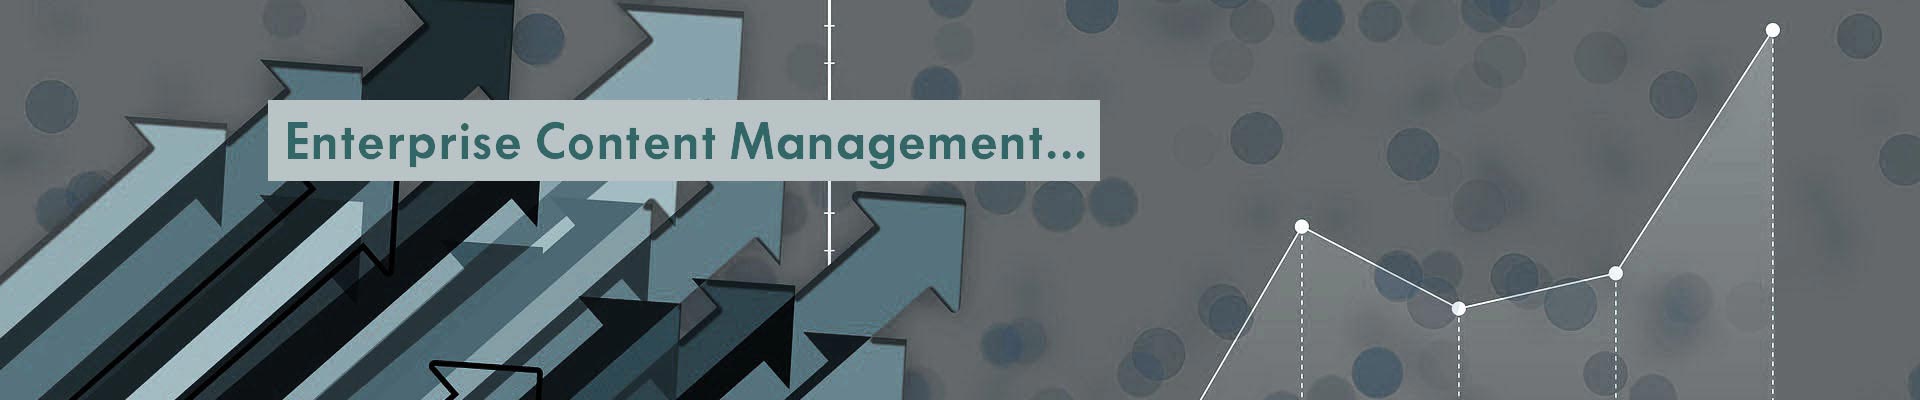 Enterprise Content Management (ECM) & Workflow Solutions